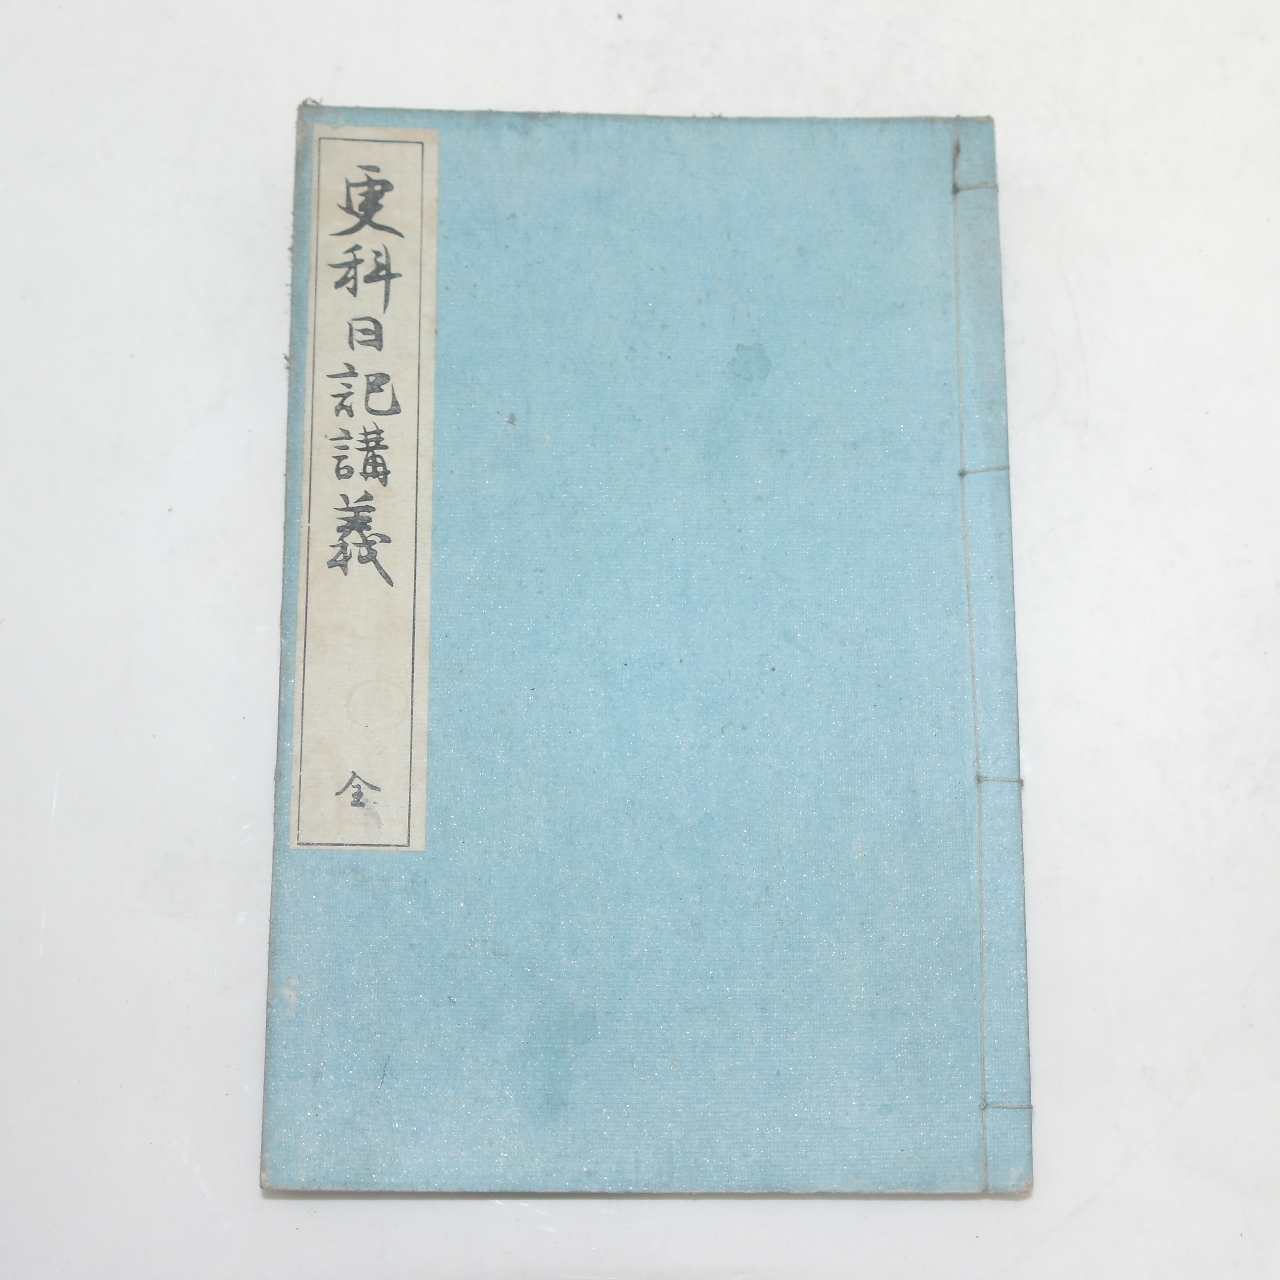 1899년(명치32년) 일본간행 갱과일기강의(更科日記講義)